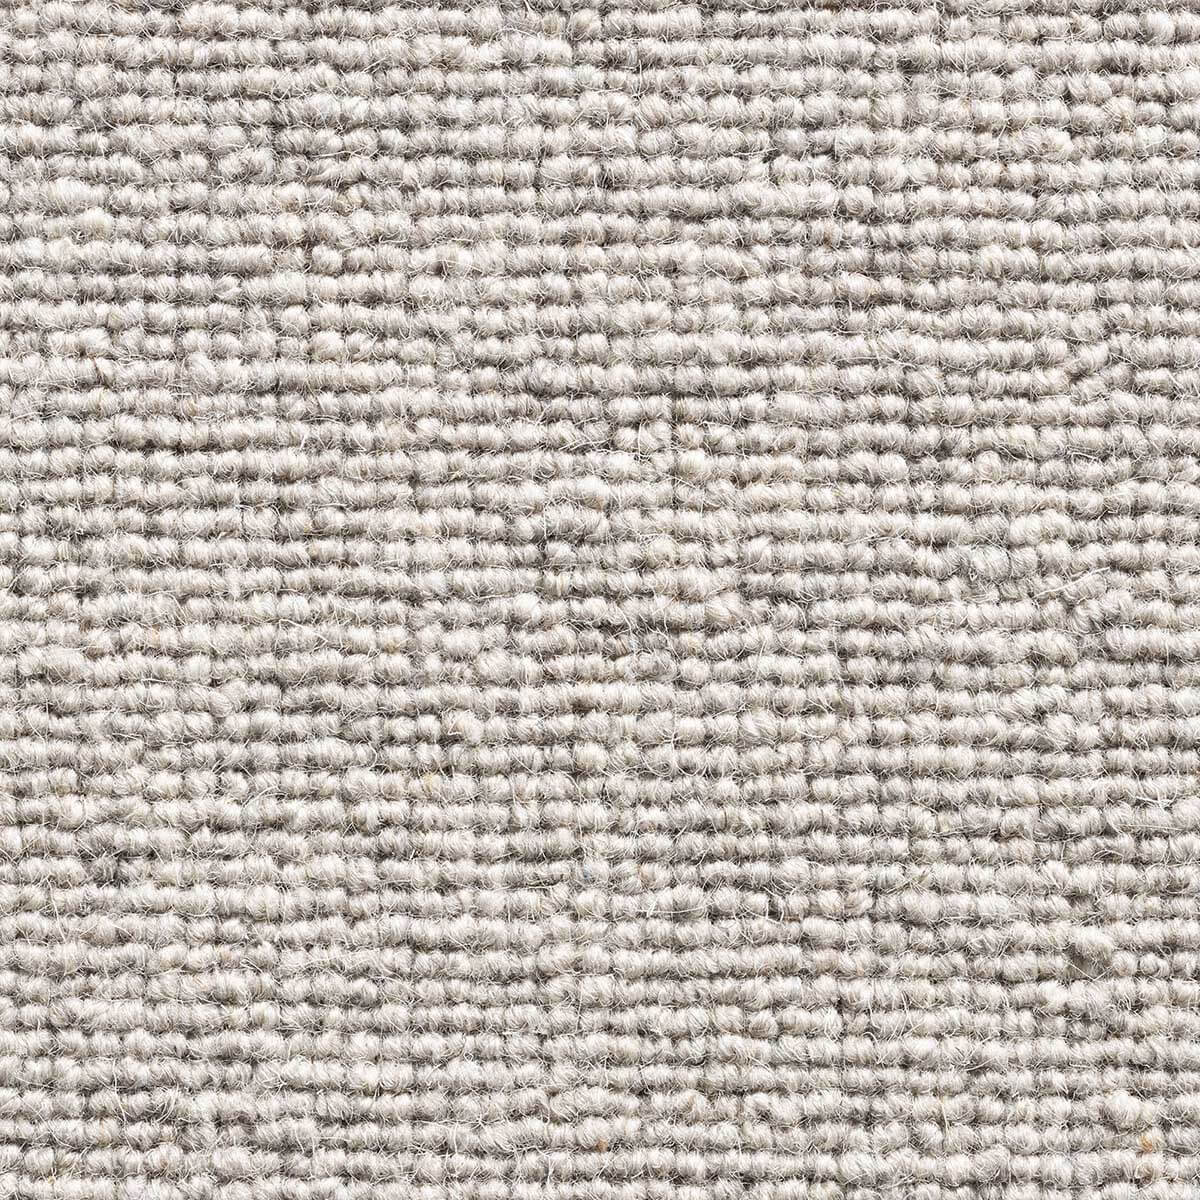 Glen Loop Wool Carpet - Ash 174